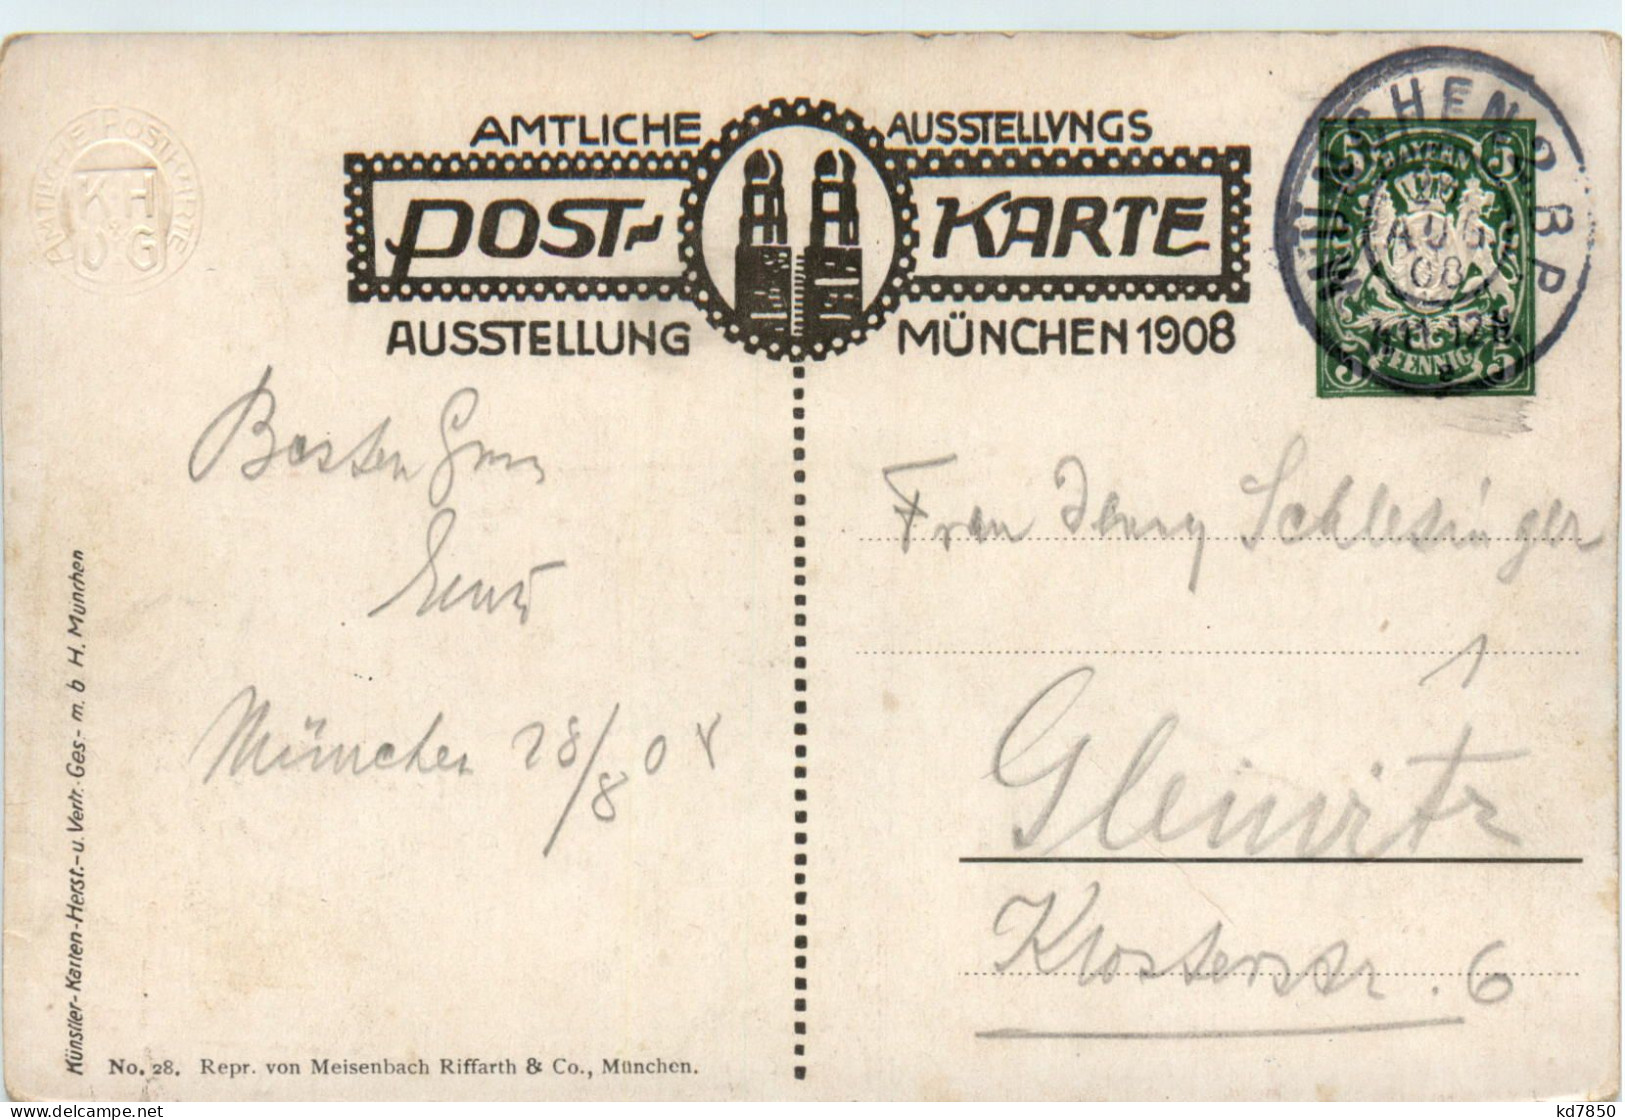 München - Ausstellung 1908 - Künstlertheater - Ganzsache PP15 C142 028 - Muenchen